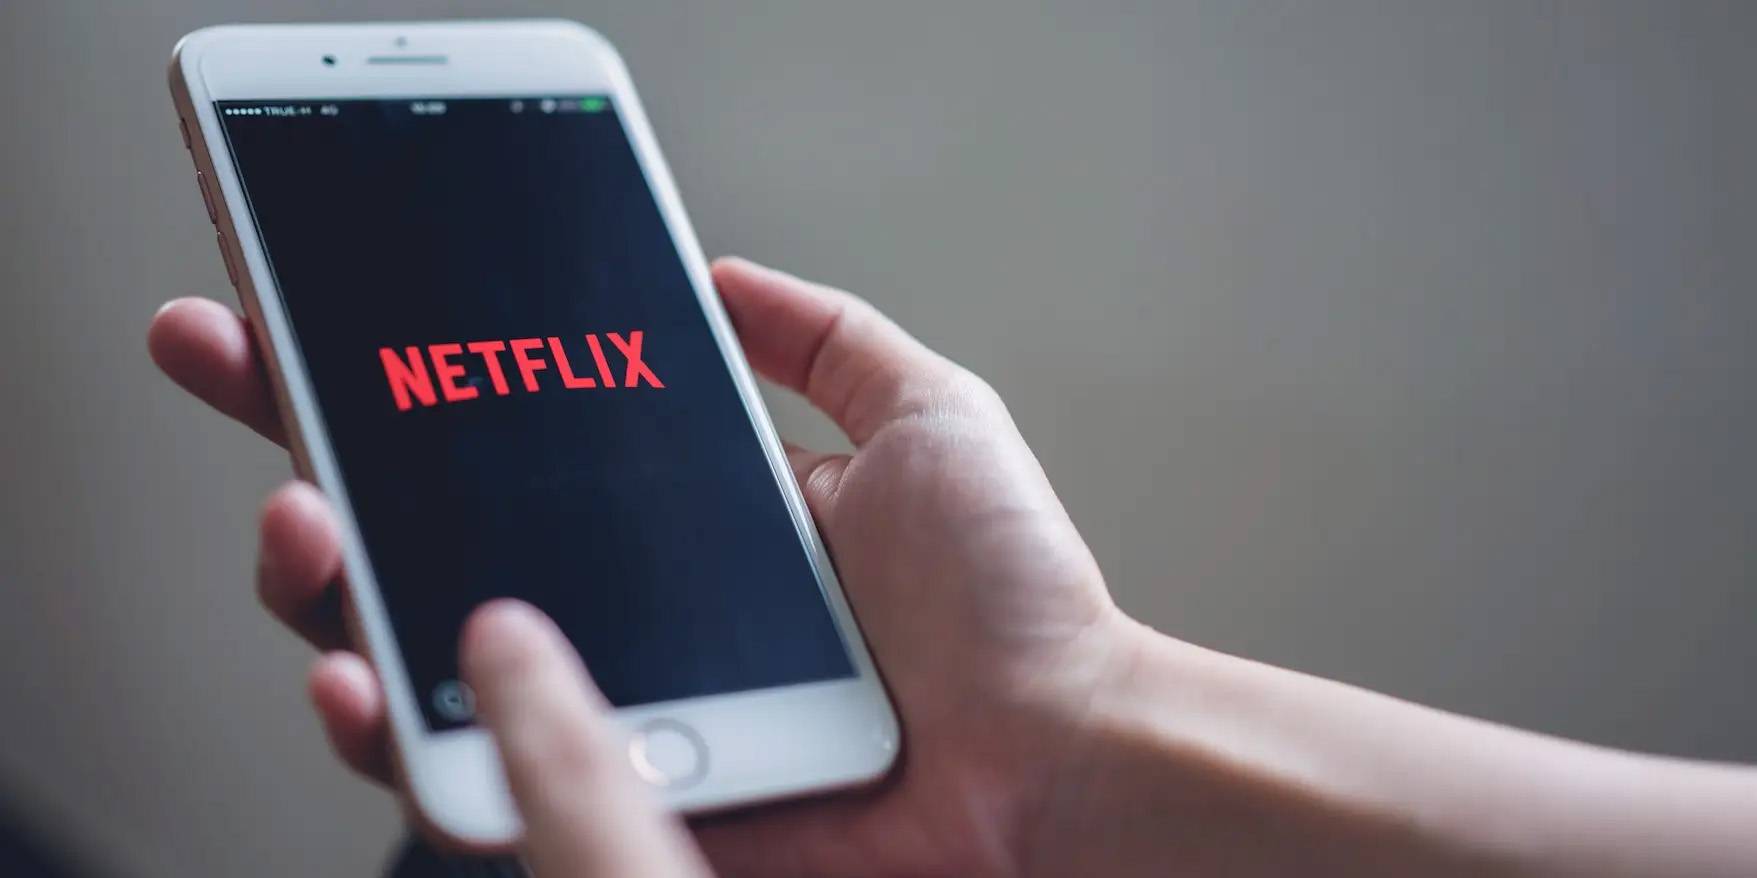 Shutterstock - Le cinque stelle e i Mi piace usati da “Aiyouteng” sono obsoleti e Netflix vuole sovvertire il sistema di classificazione dei media in streaming